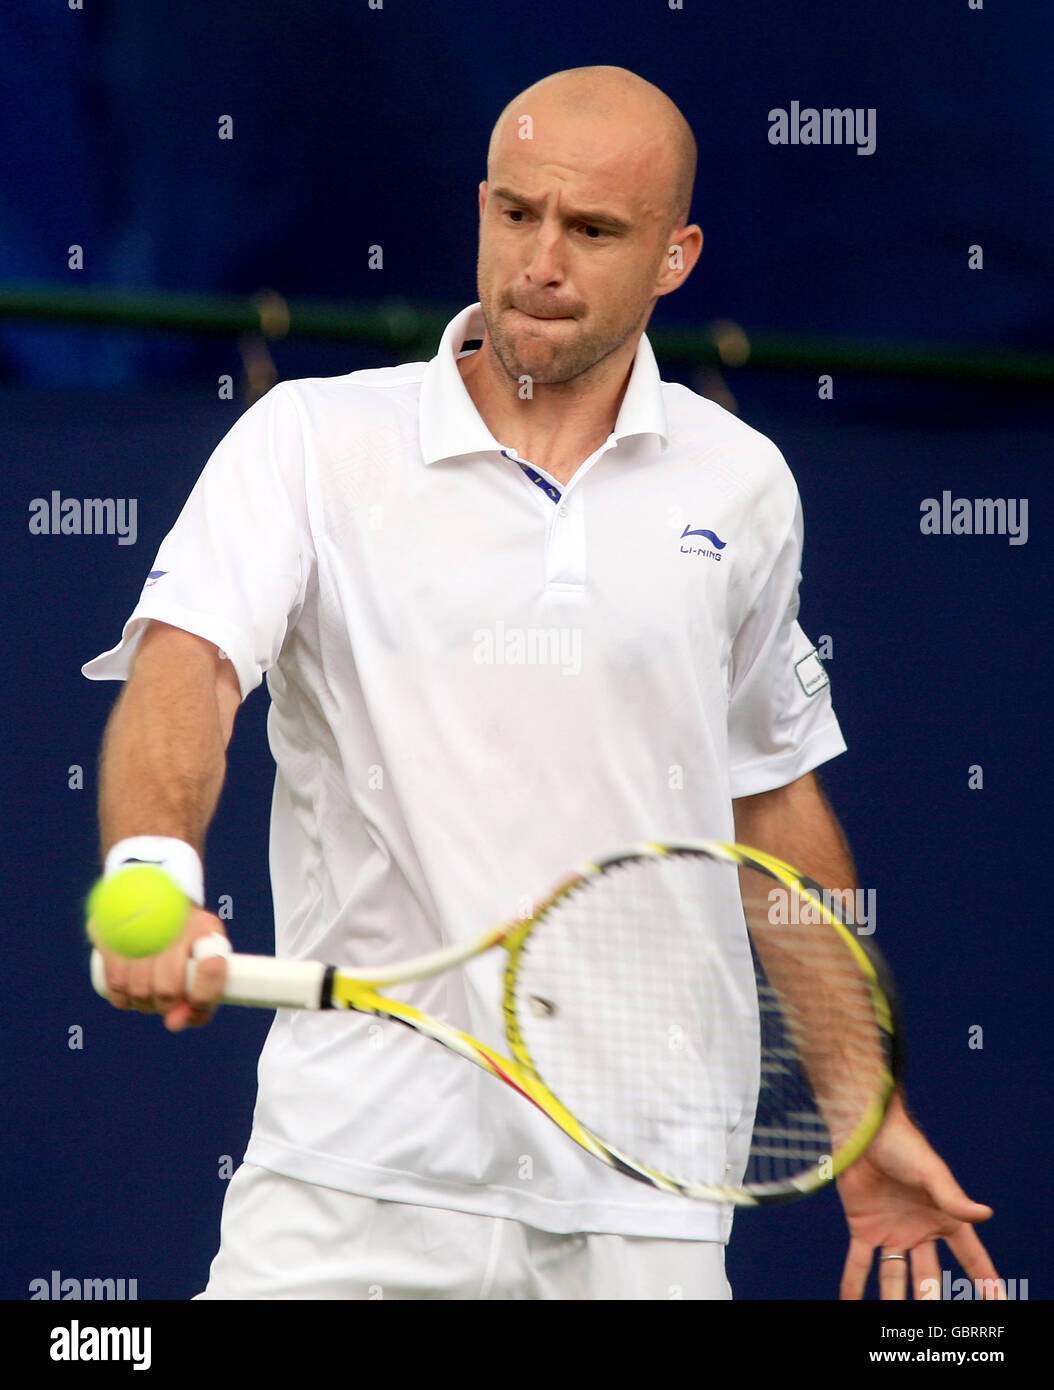 Tennis - Campionati AEGON - giorno uno - il Club della Regina. Ivan Ljubicic  della Croazia Foto stock - Alamy